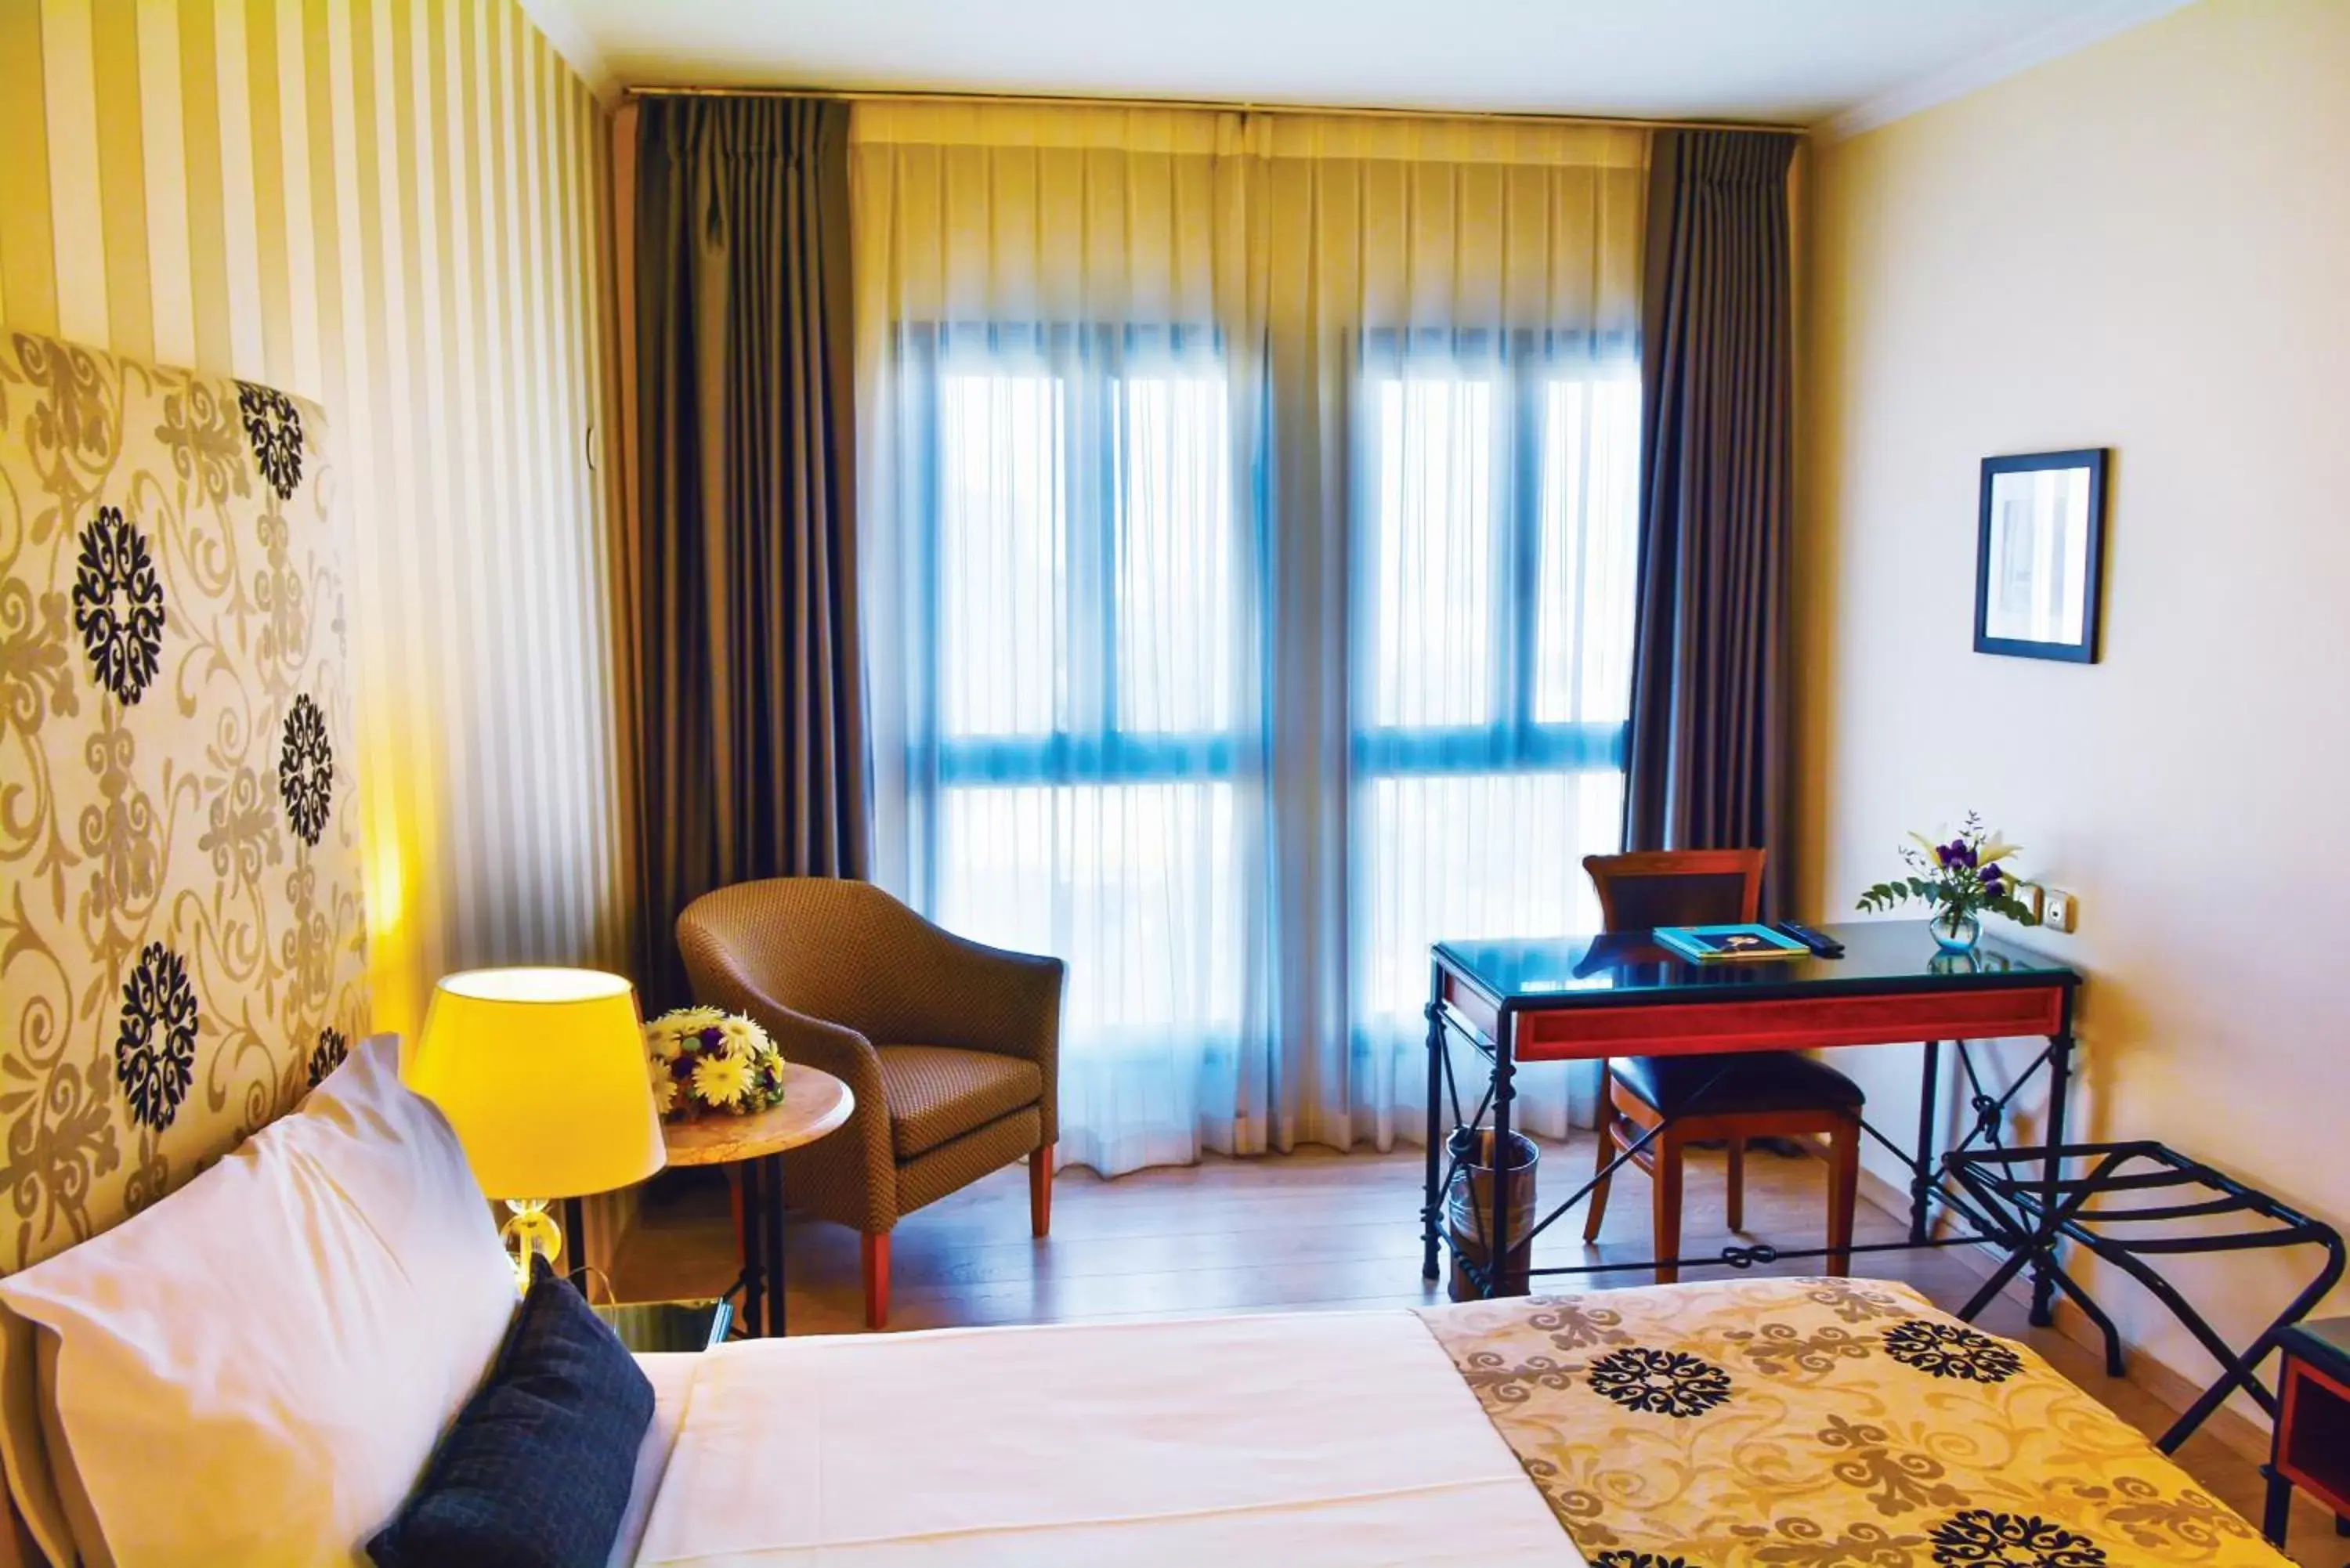 Bedroom, Seating Area in Eldan Hotel